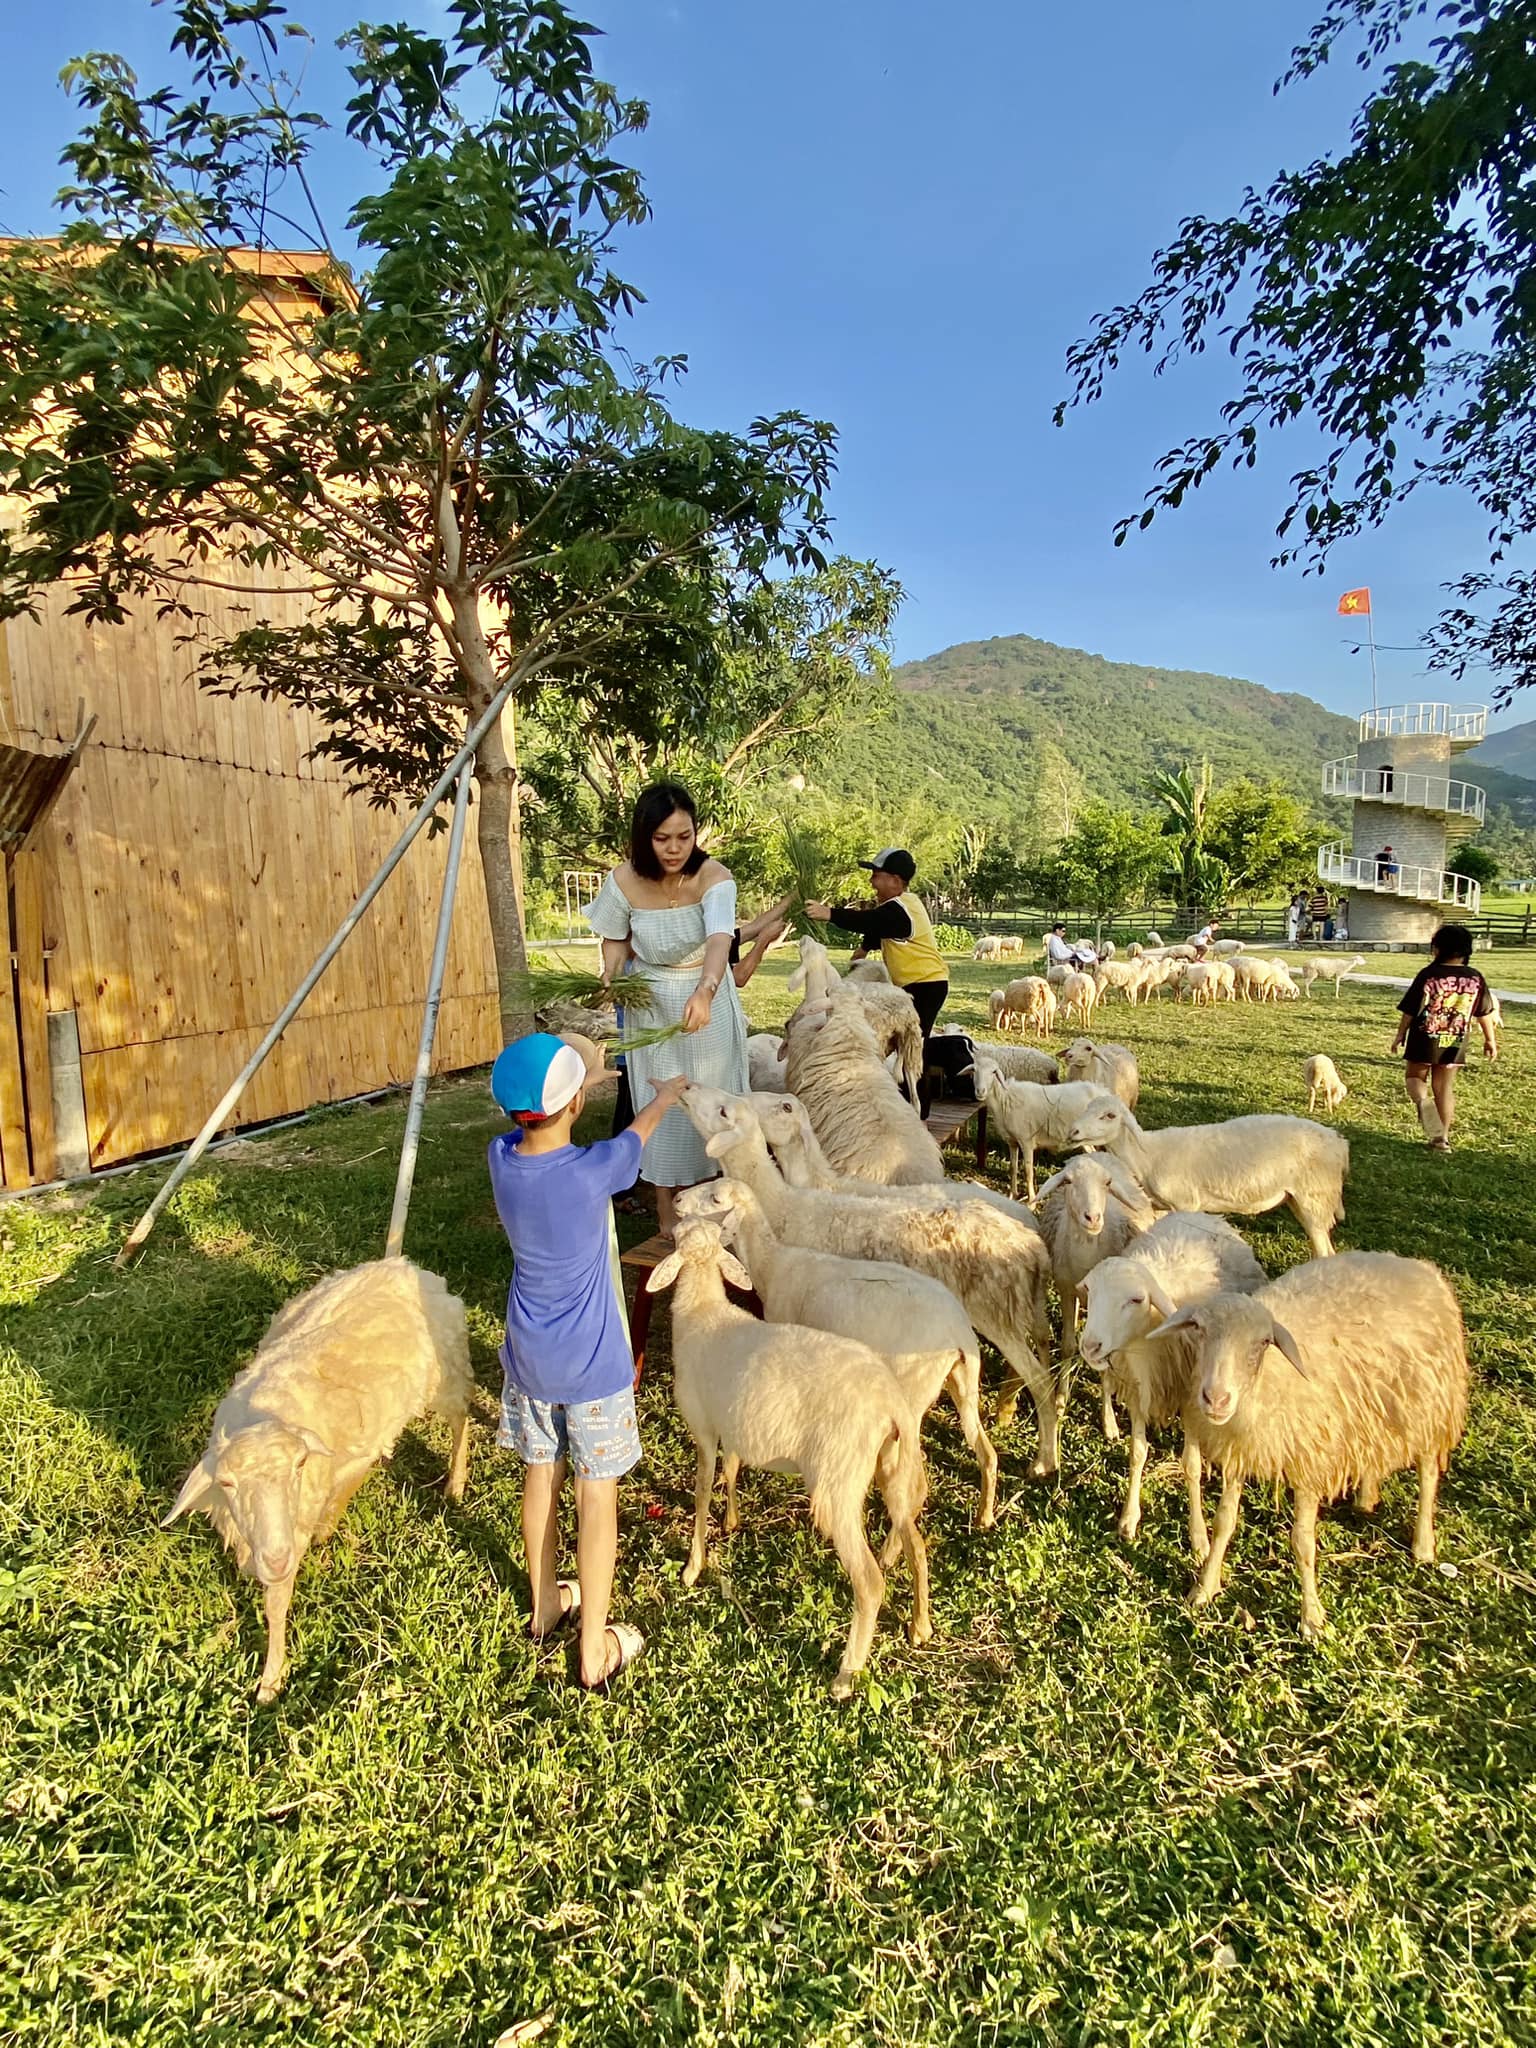 Hàng chục đến hàng trăm con cừu được chăm sóc rất kỹ lưỡng, chu đáo để phục vụ du khách chụp hình